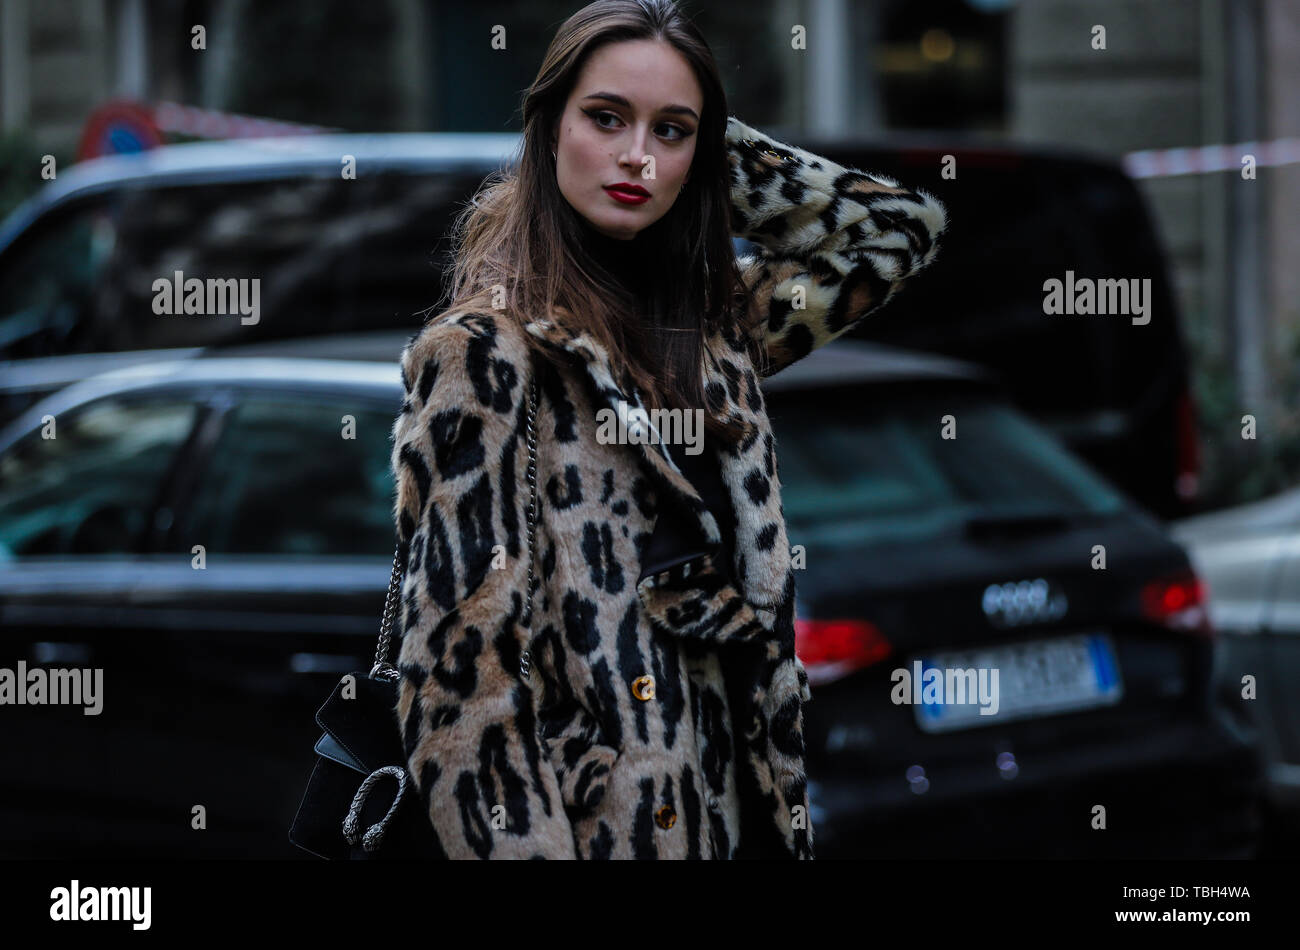 Mailand, Italien. 24 Feb, 2019. 2019: Modell Chiara Corridori auf der Straße, die im Rahmen der Mailänder Modewoche. Credit: Mauro Del Signore/Pacific Press/Alamy leben Nachrichten Stockfoto